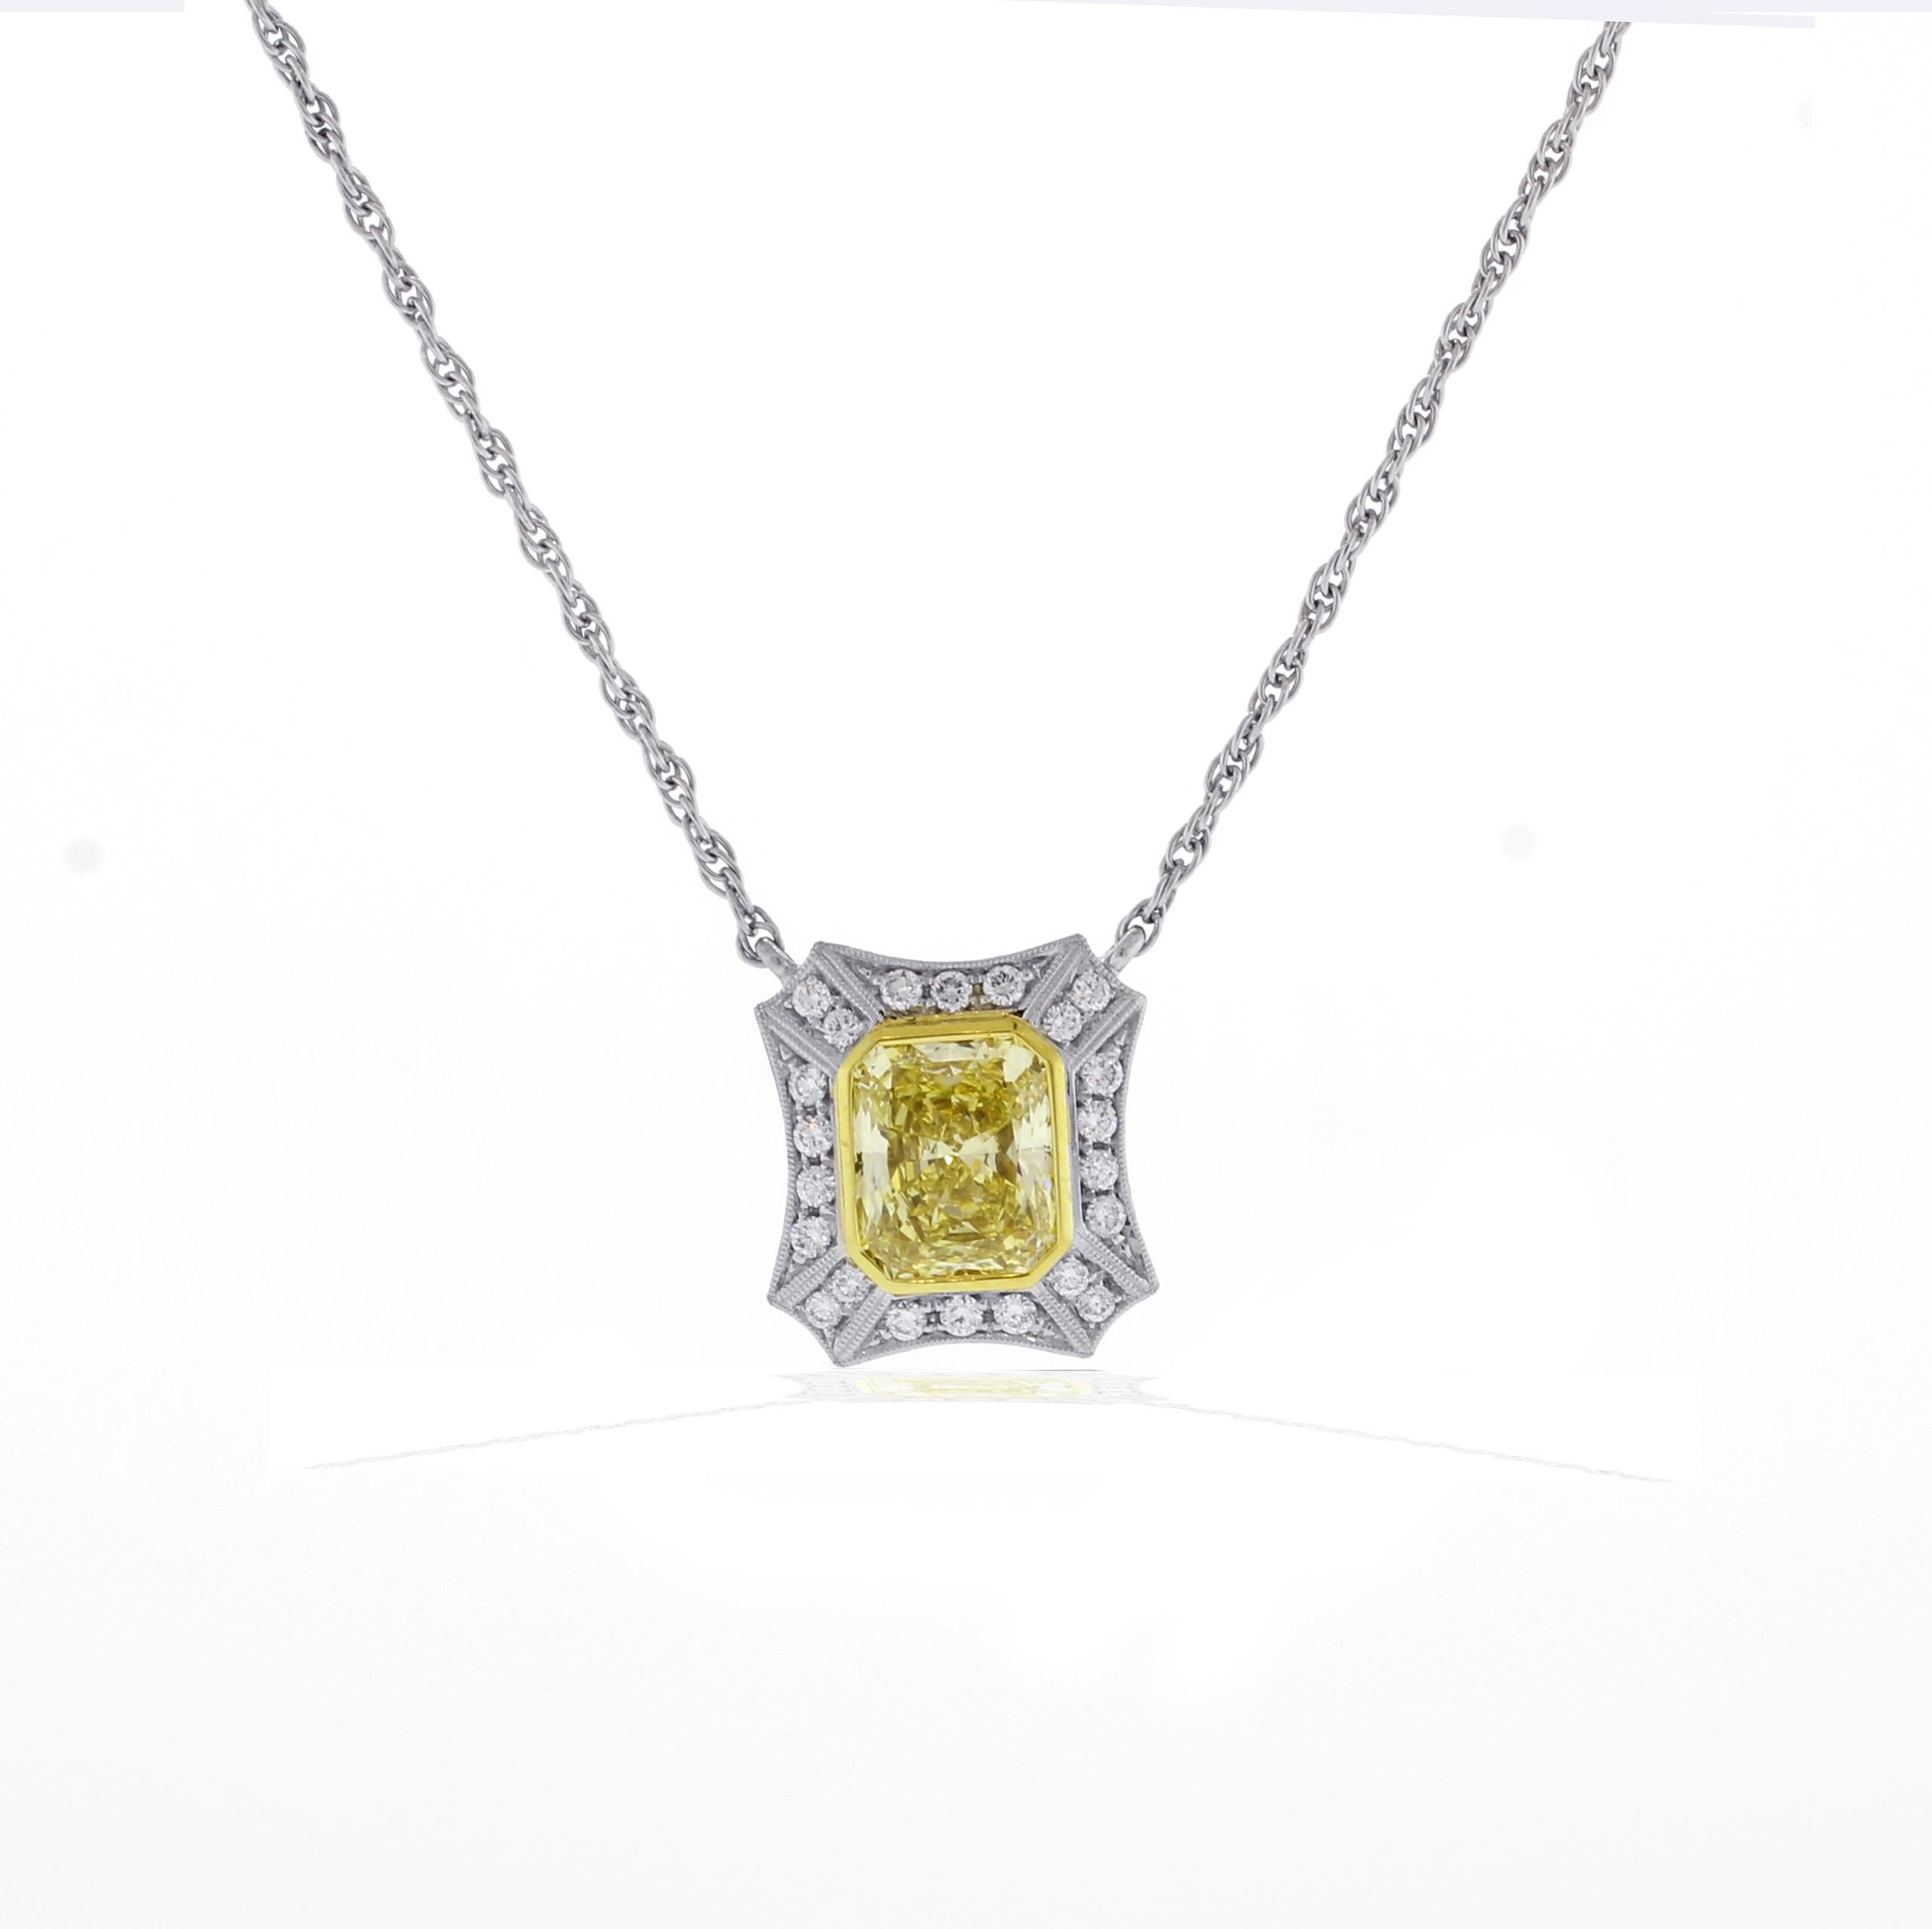 Von den Meisterjuwelieren von Pampillonia stammt dieser sehr geschätzte natürliche, gelbe Diamant im Radiant-Schliff mit einem Gewicht von 2,46 Karat. Der Diamant ruht in einem handgefertigten Platin-Mikro  pflasterfassung mit zweiundzwanzig